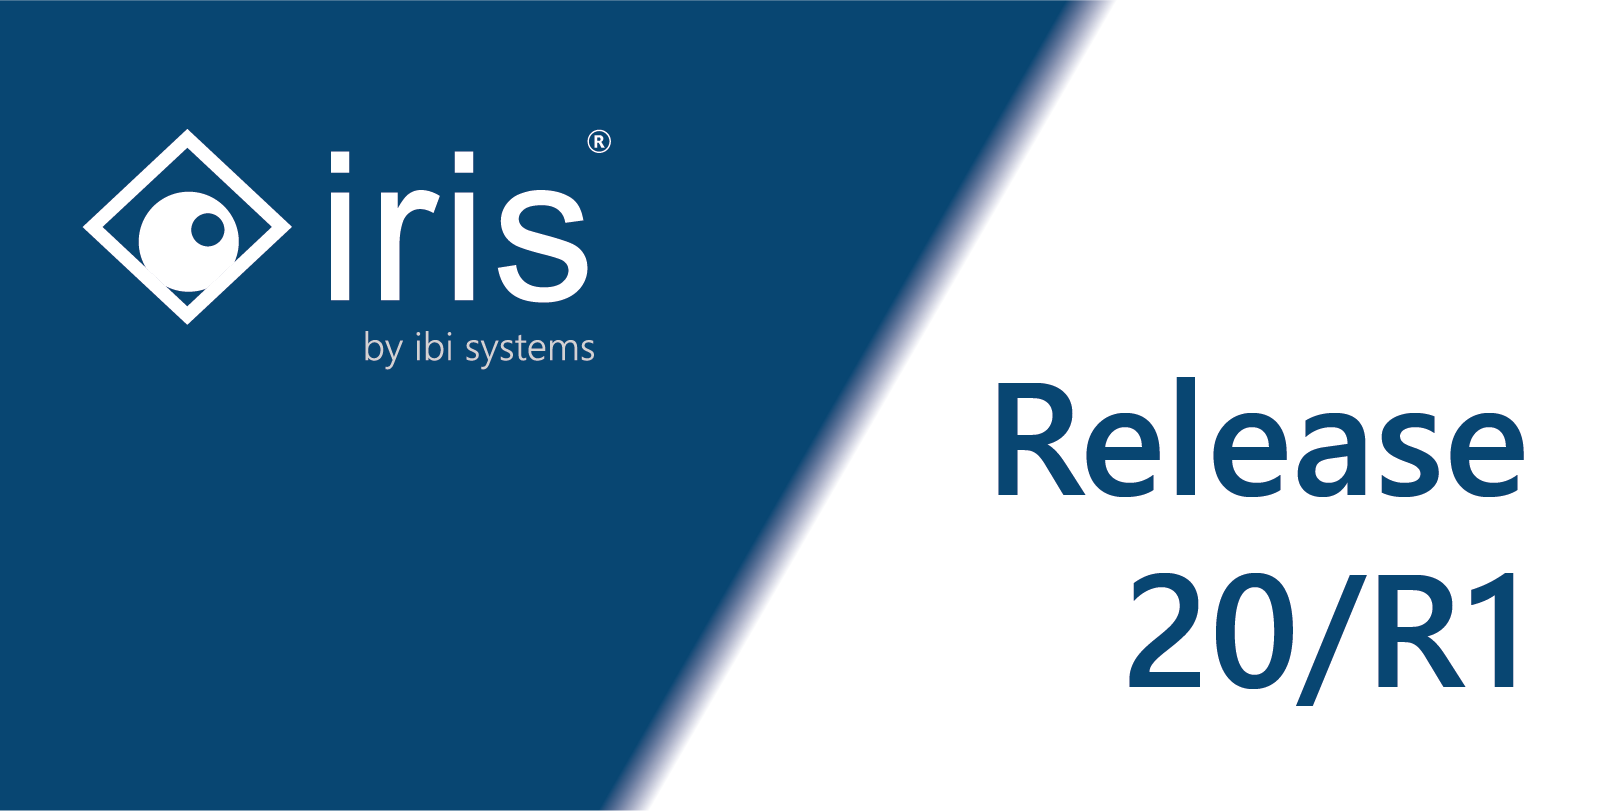 Release-Vorstellung-ibi-systems-iris-20/R1